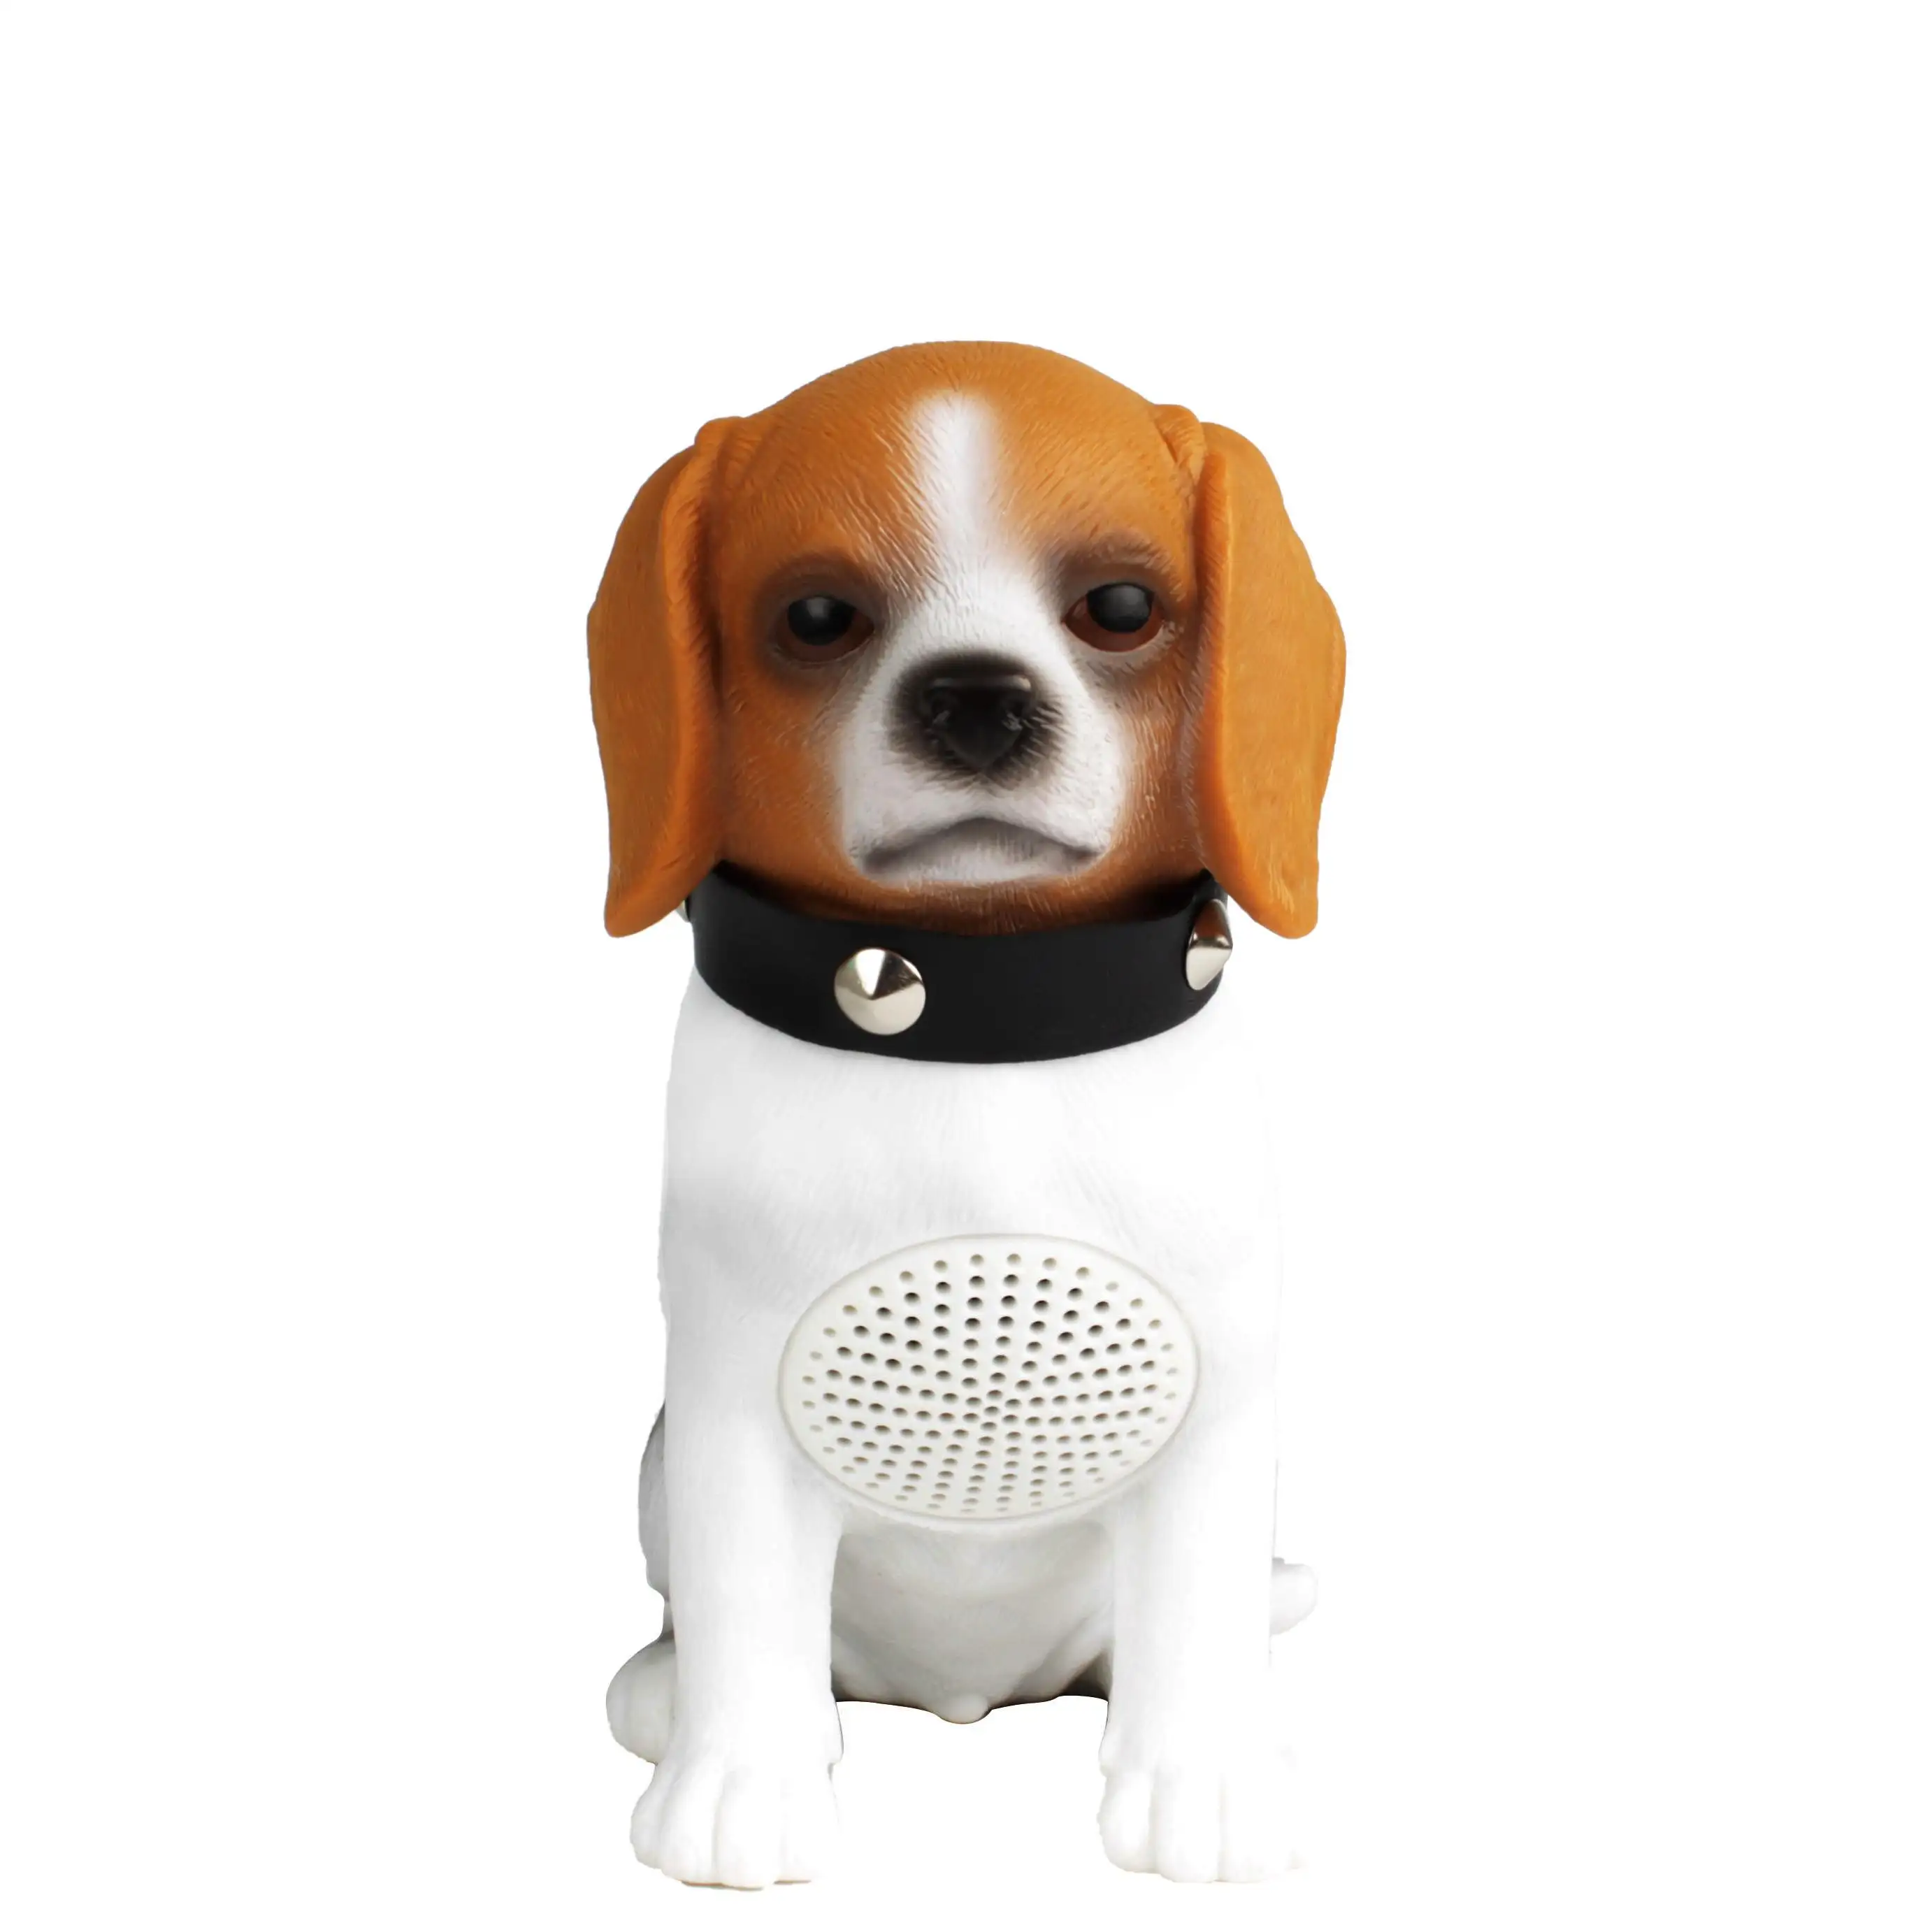 Vendita calda BT 5.2 altoparlanti wireless smart portatili USB altoparlanti DC 5V alimentazione cane animale altoparlante senza fili